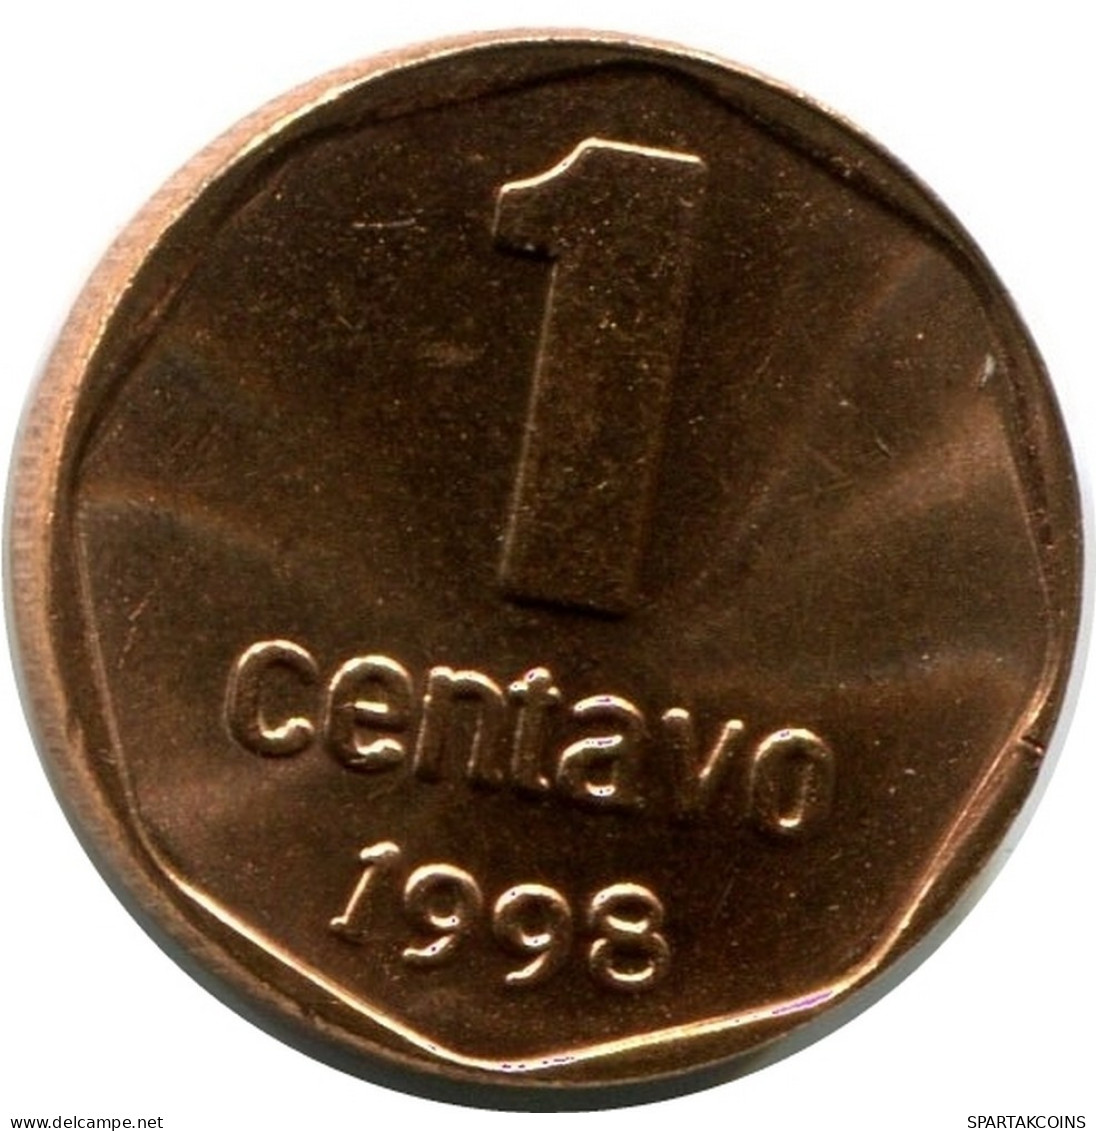 1 CENTAVO 1998 ARGENTINIEN ARGENTINA Münze UNC #M10082.D.A - Argentina